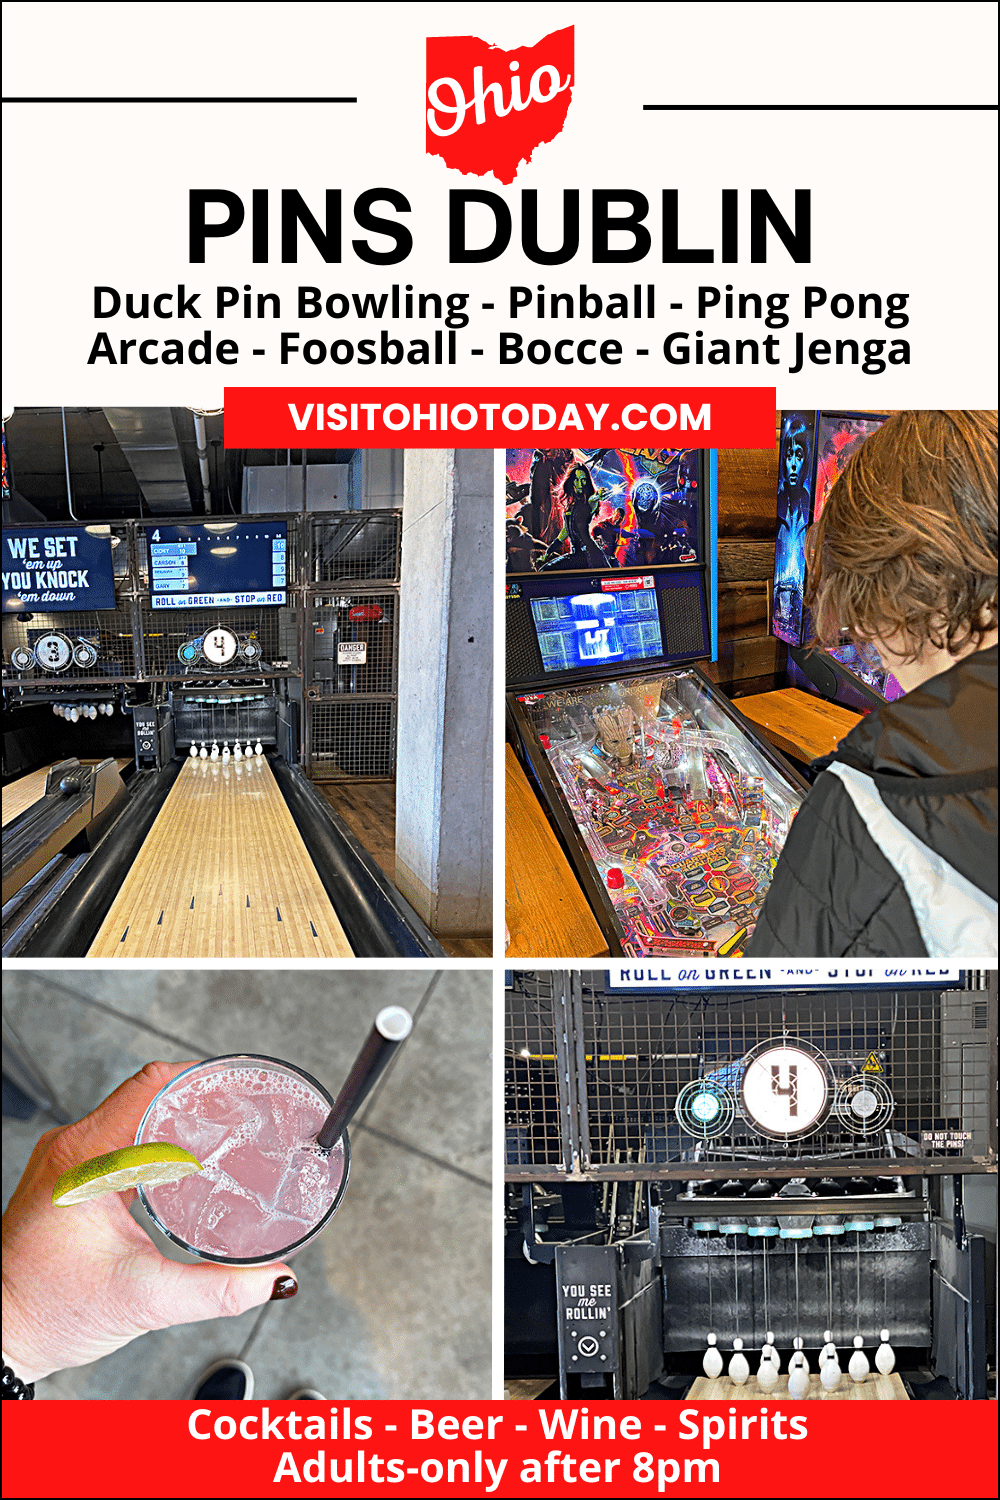 Pins Mechanical Dublin, aka Pins Dublin is located in the Bridge Park area of Dublin Ohio. Pins Dublin has duckpin bowling, arcades, pinball and more!